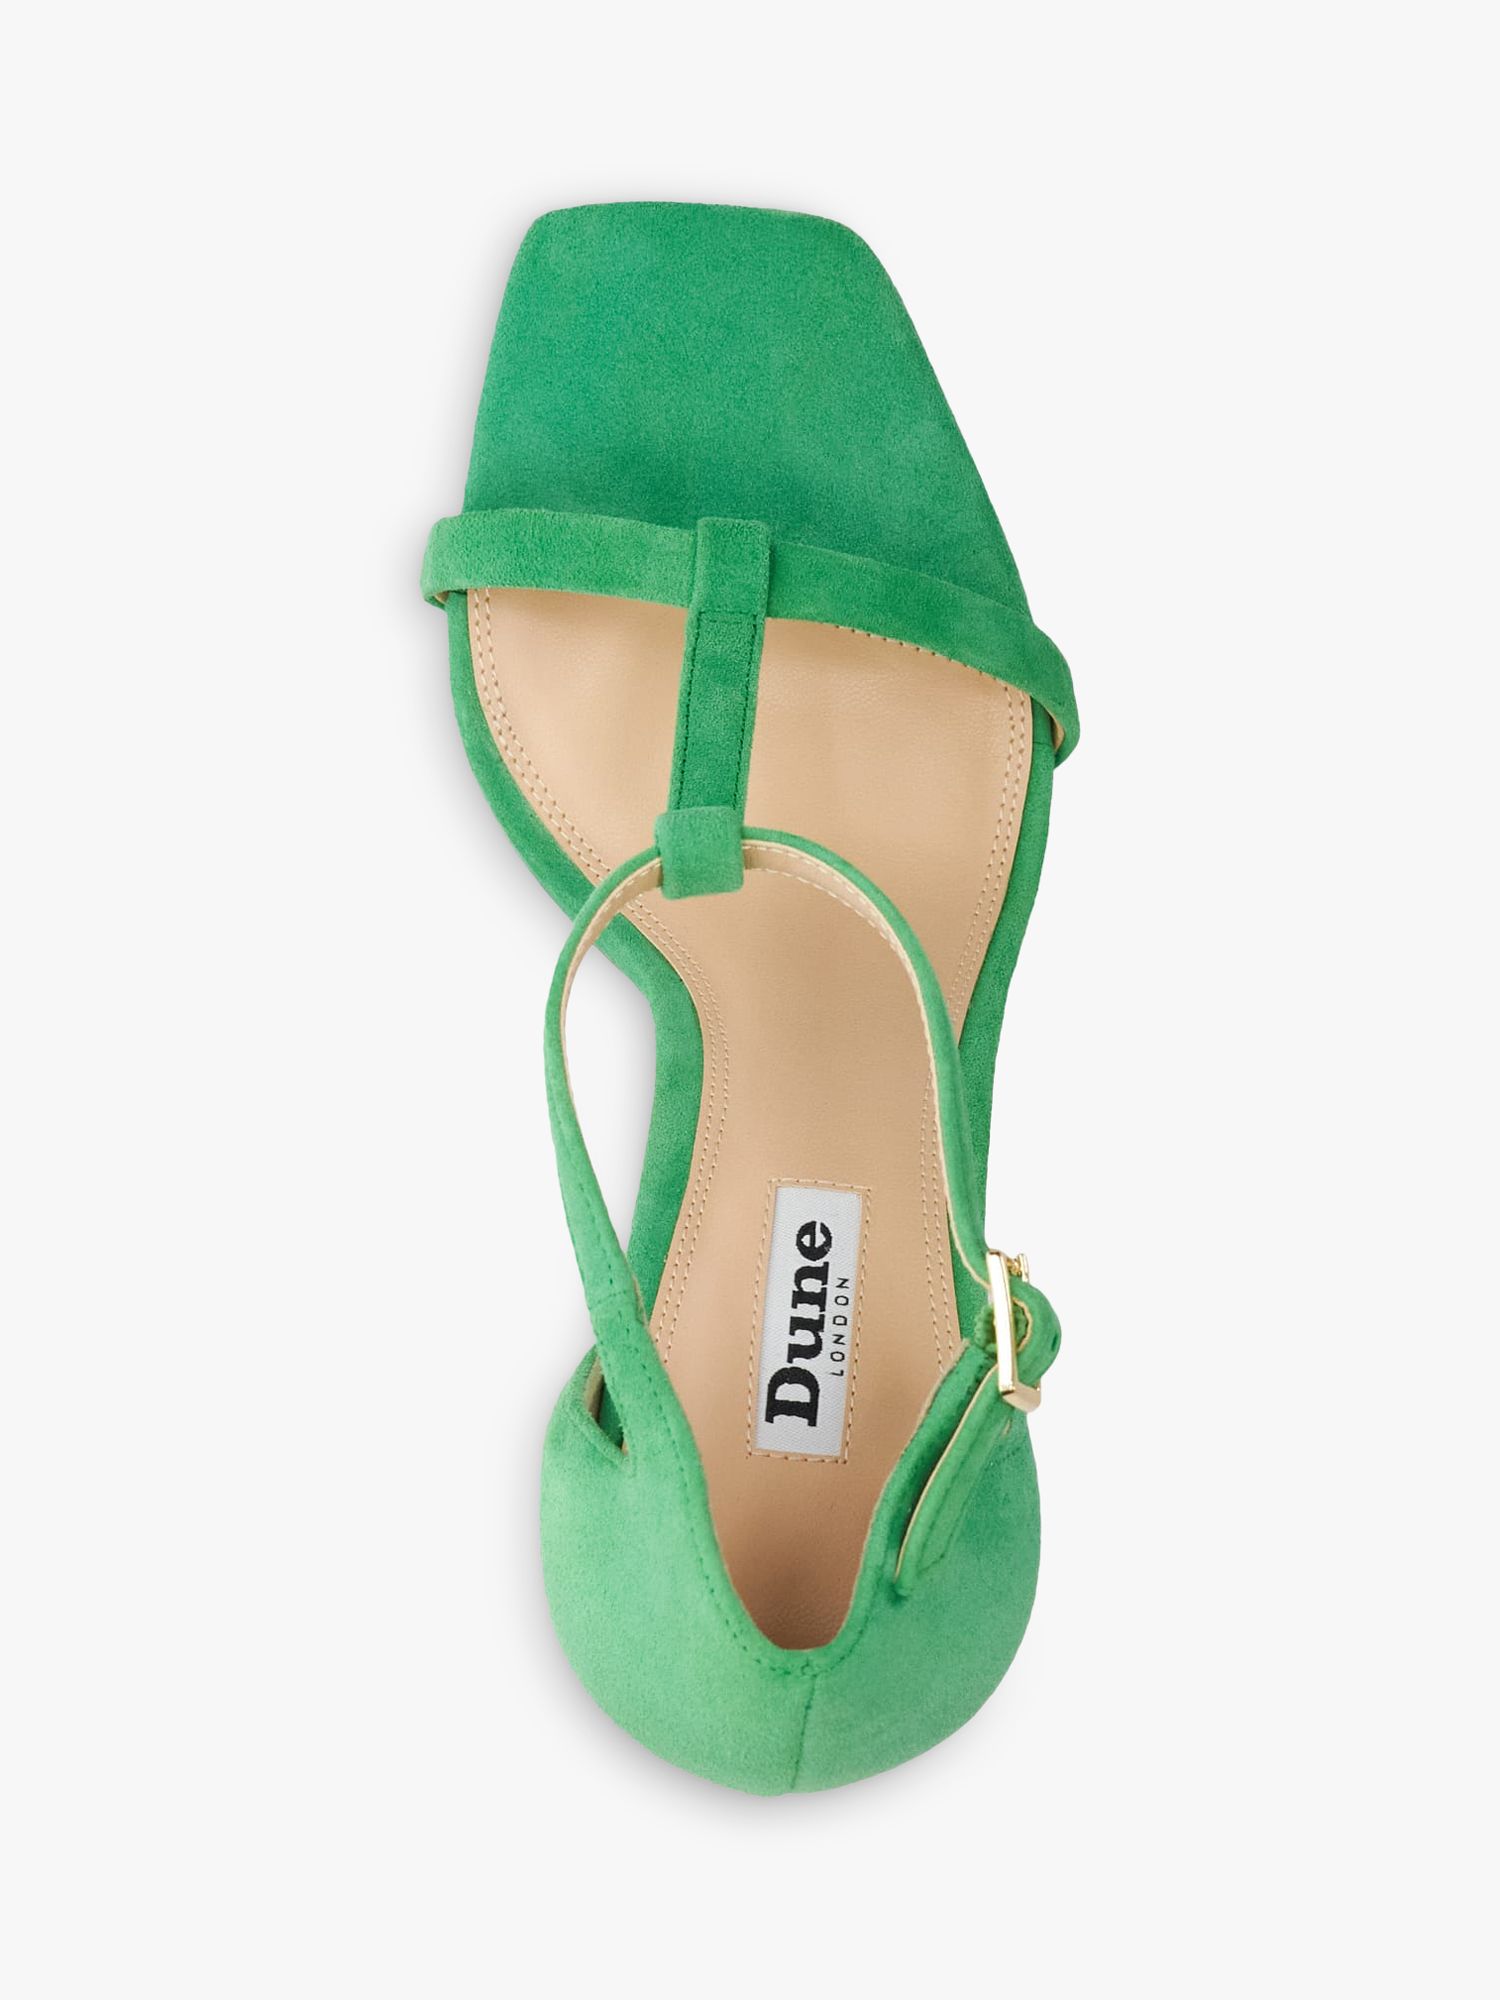 Buy Dune Milani Suede High Heel Sandals, Green Online at johnlewis.com